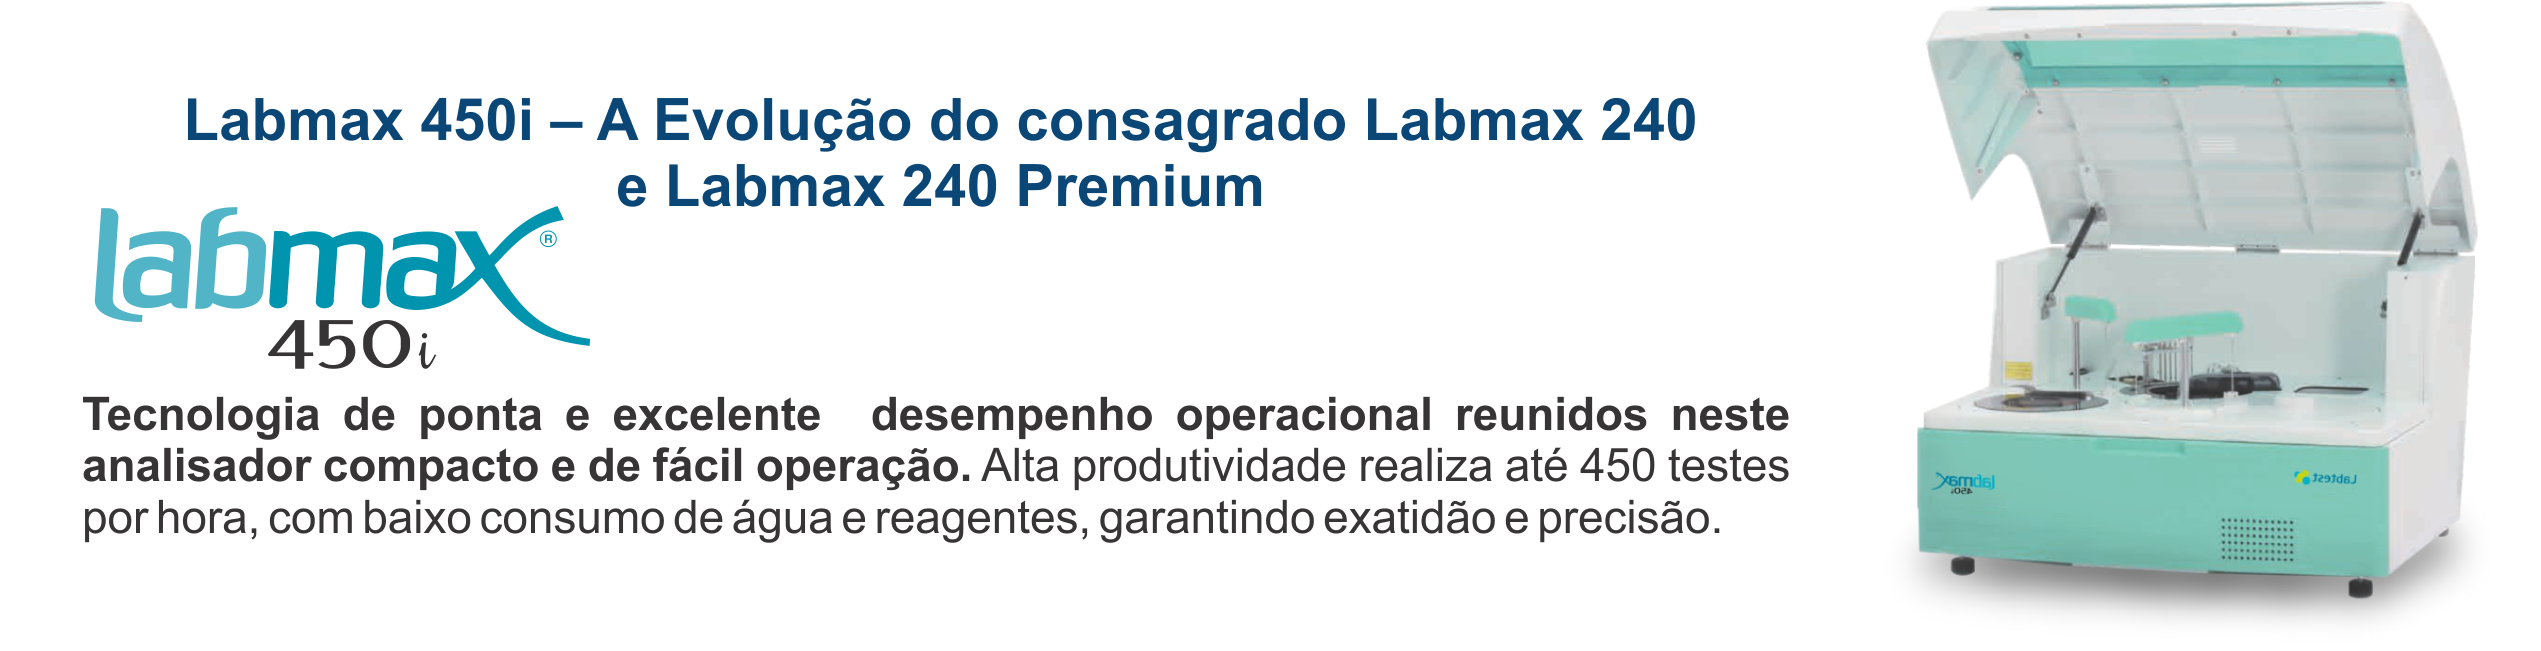 Labmax 450